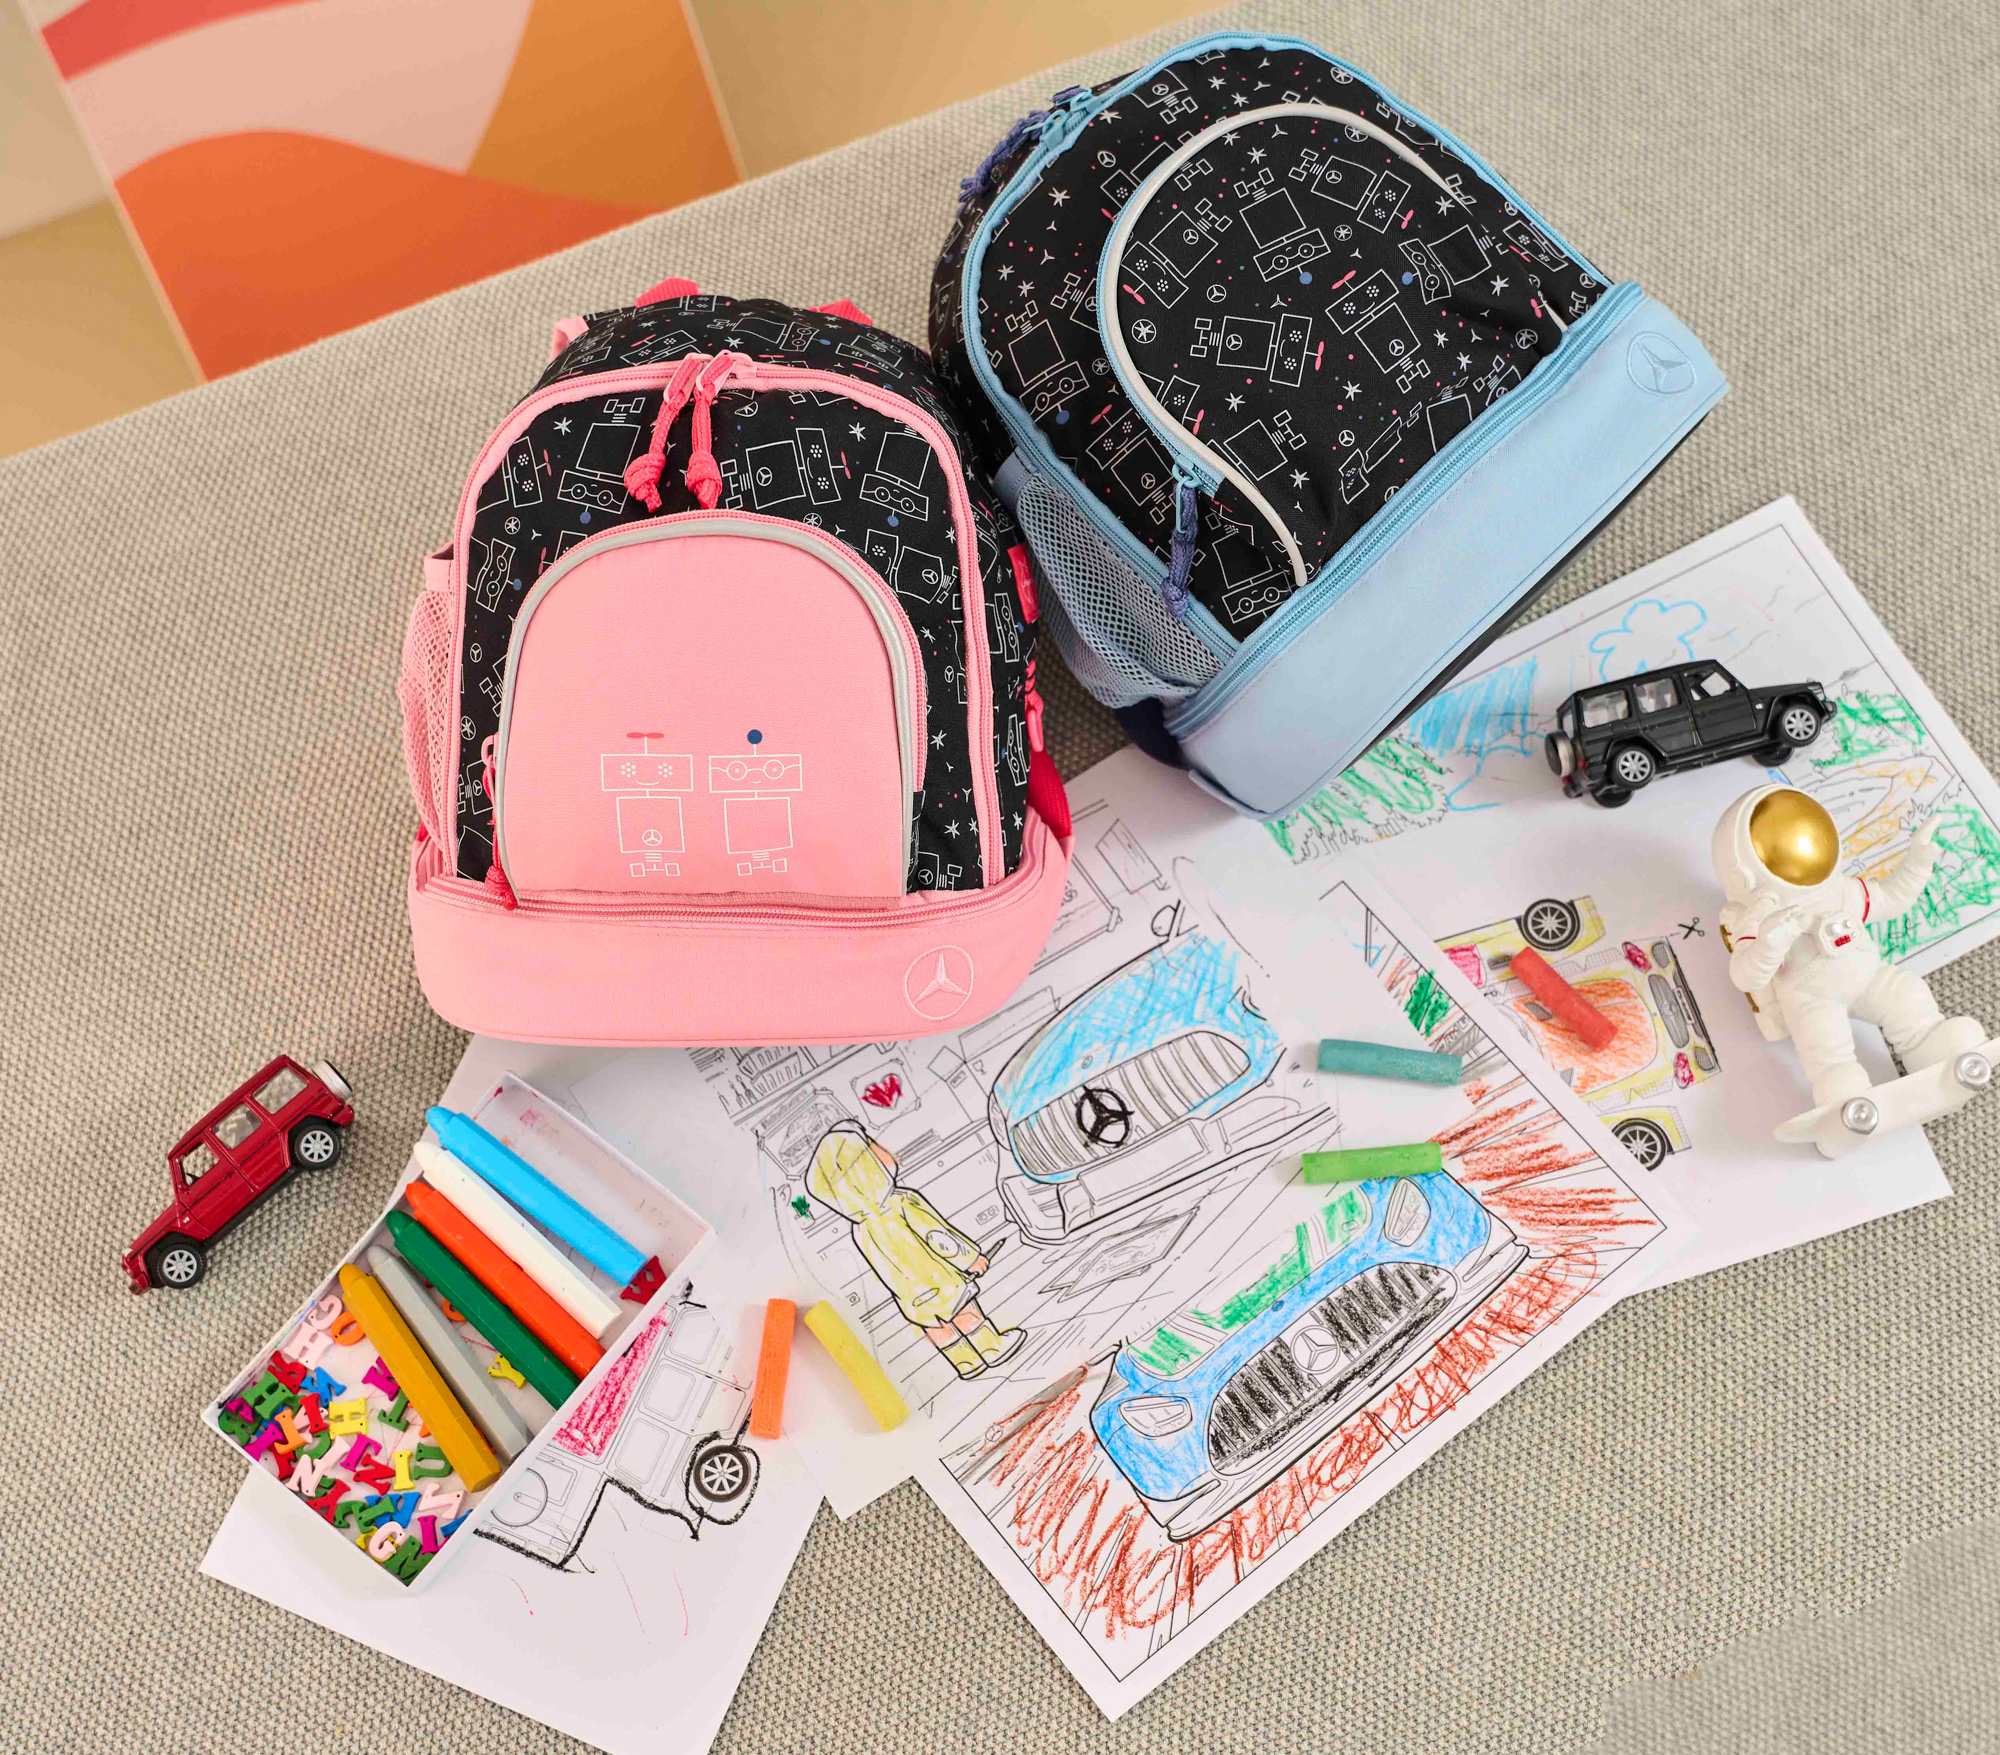 只要分享家中寶貝的著色車圖或是立體彩繪小車就有機會獲得後背包。